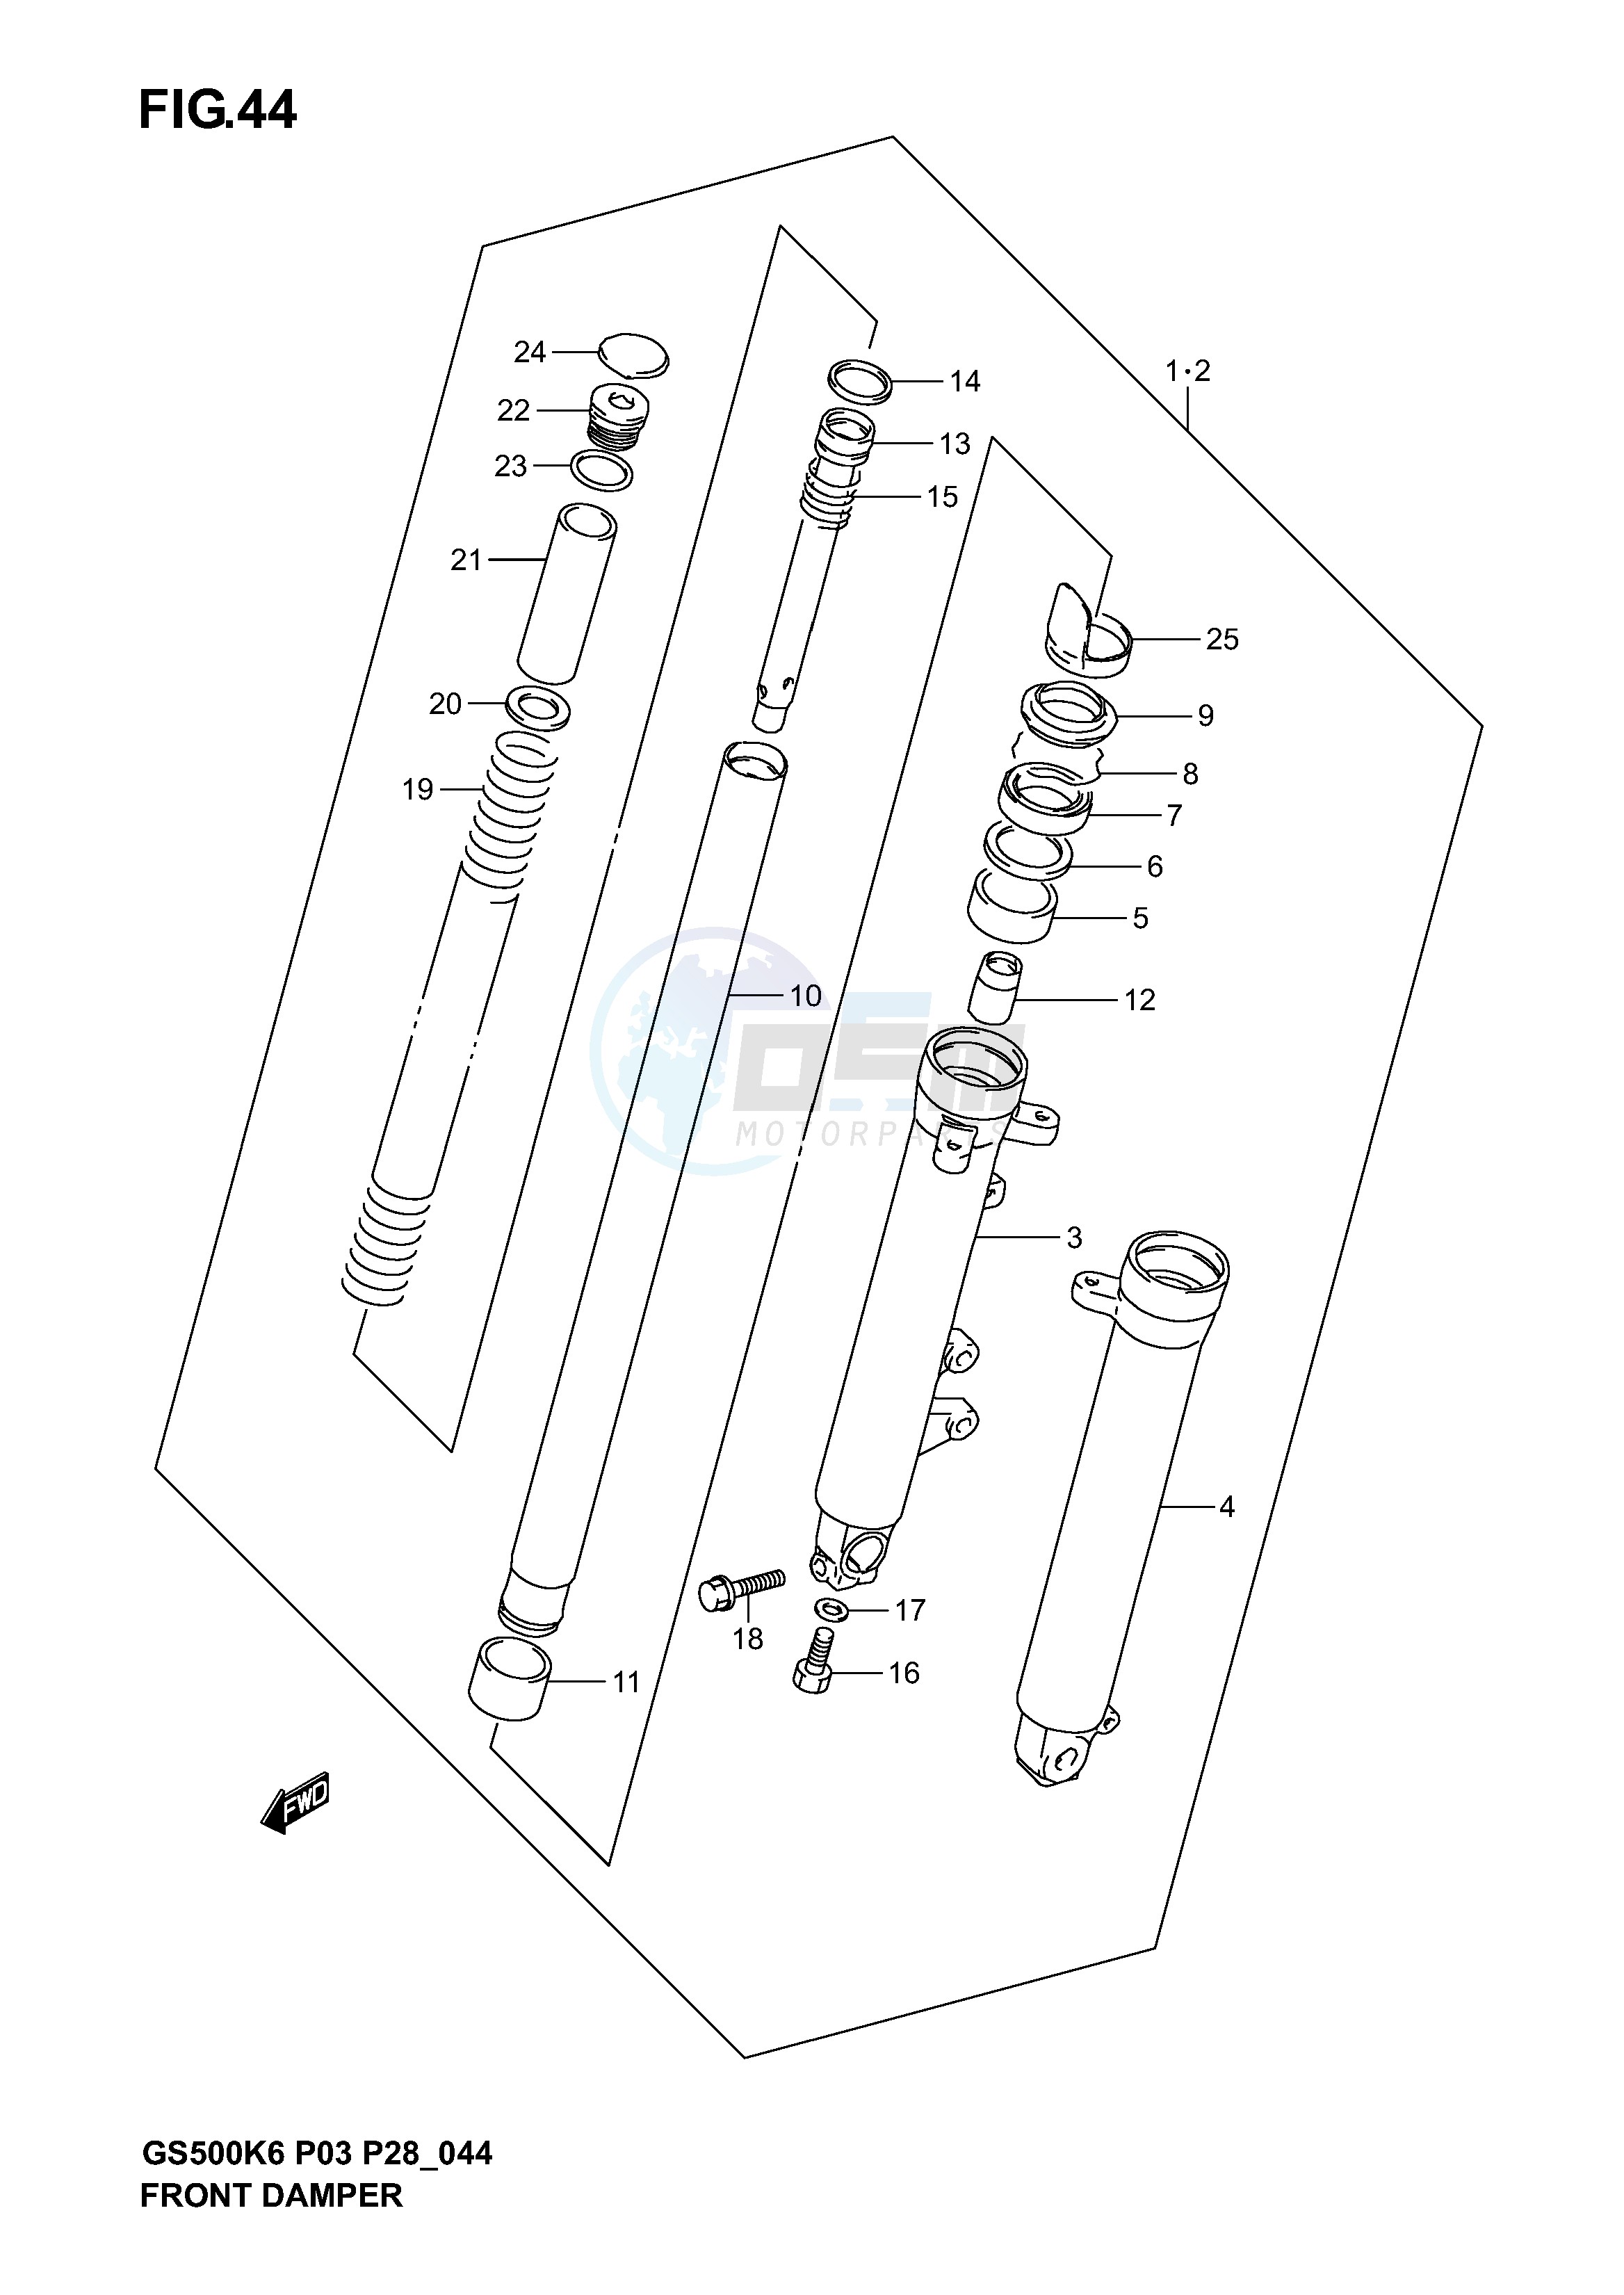 FRONT DAMPER (MODEL K3) blueprint